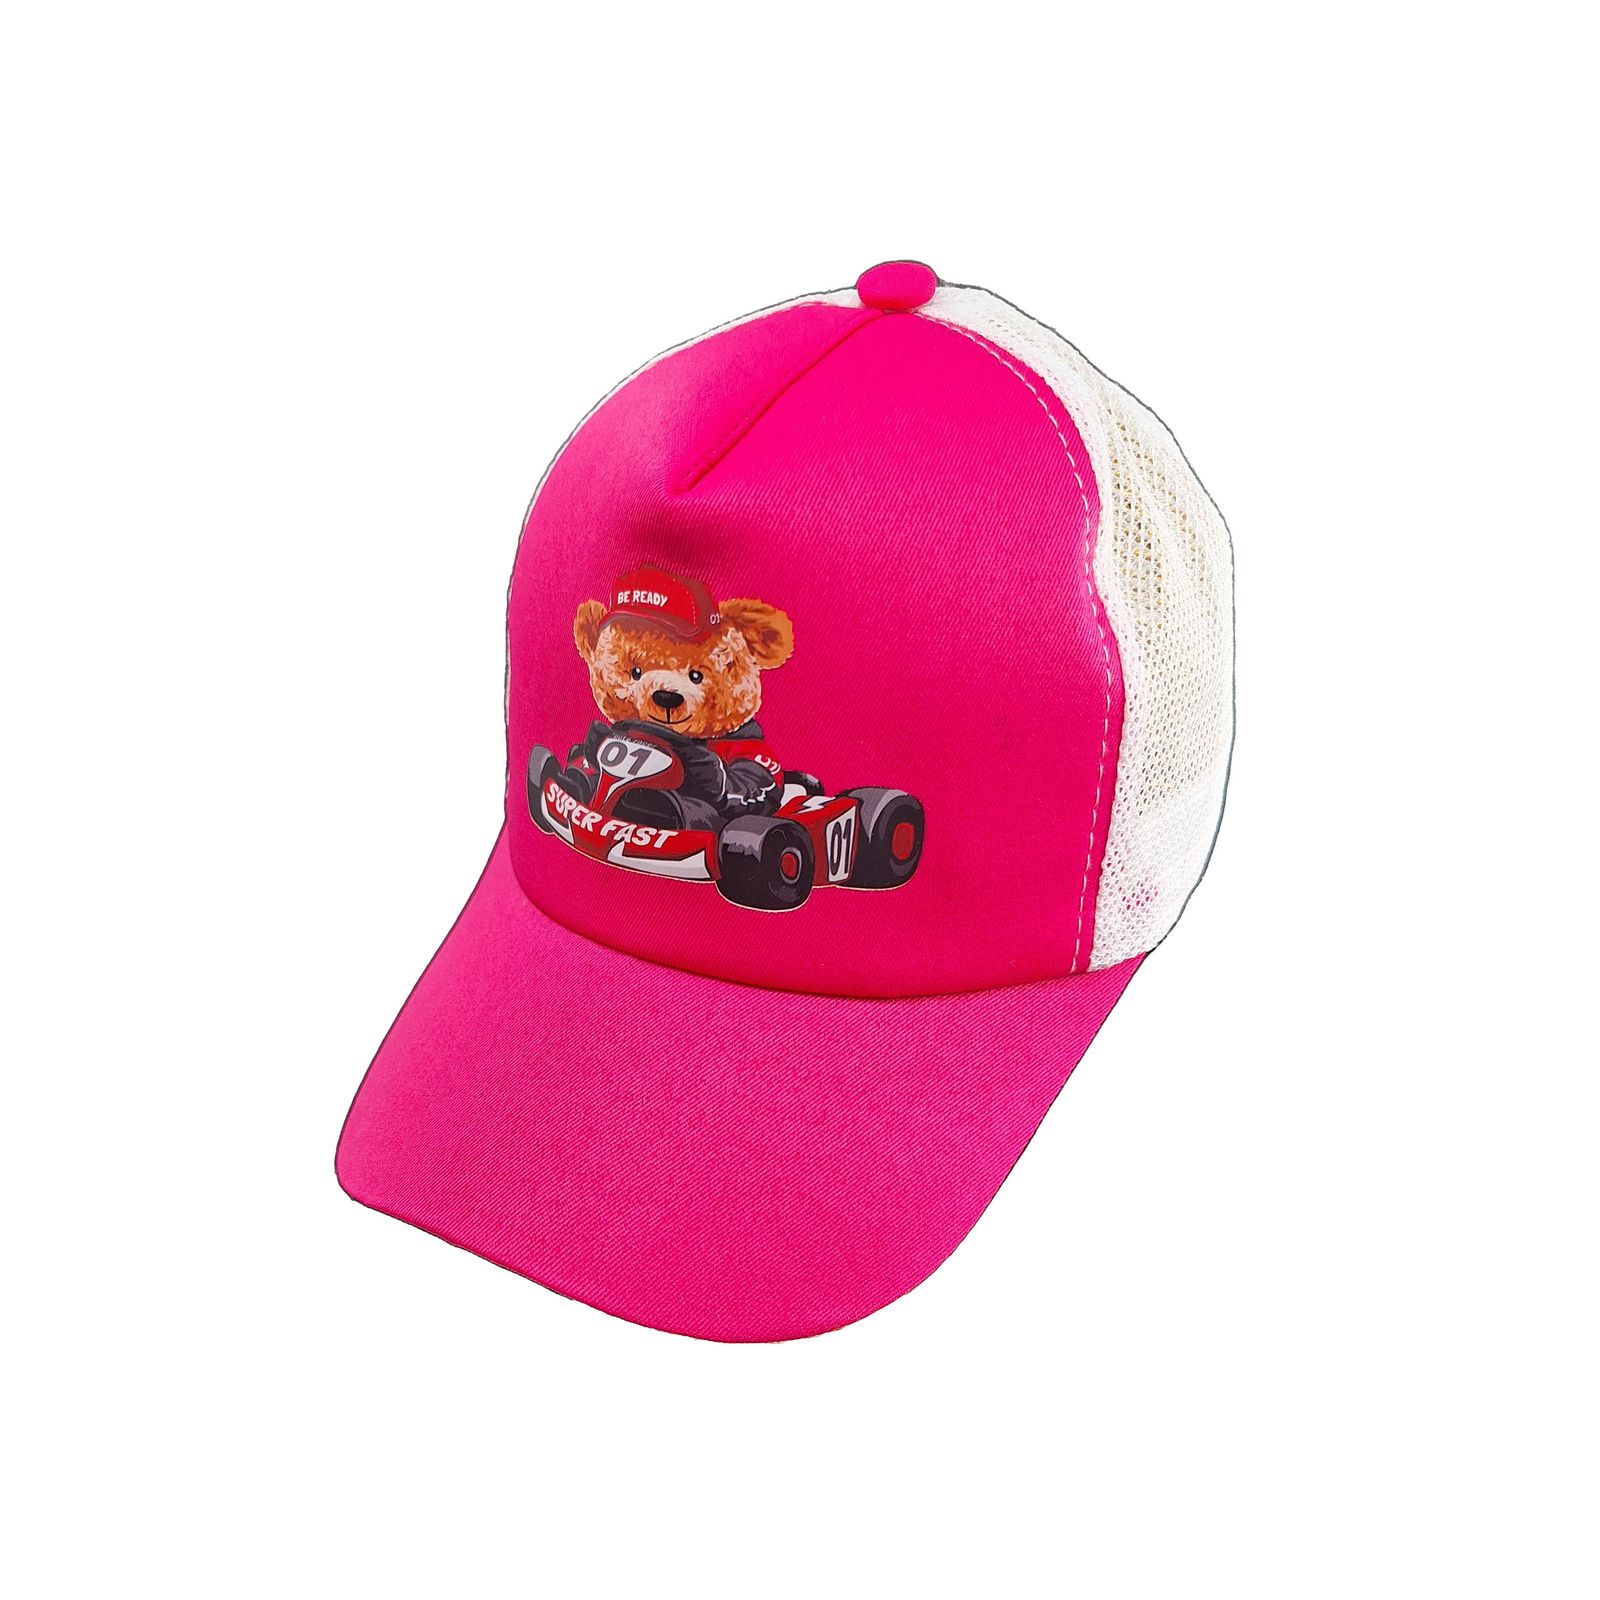 کلاه کپ بچگانه مدل SUPER FAST کد 1229 رنگ صورتی -  - 3